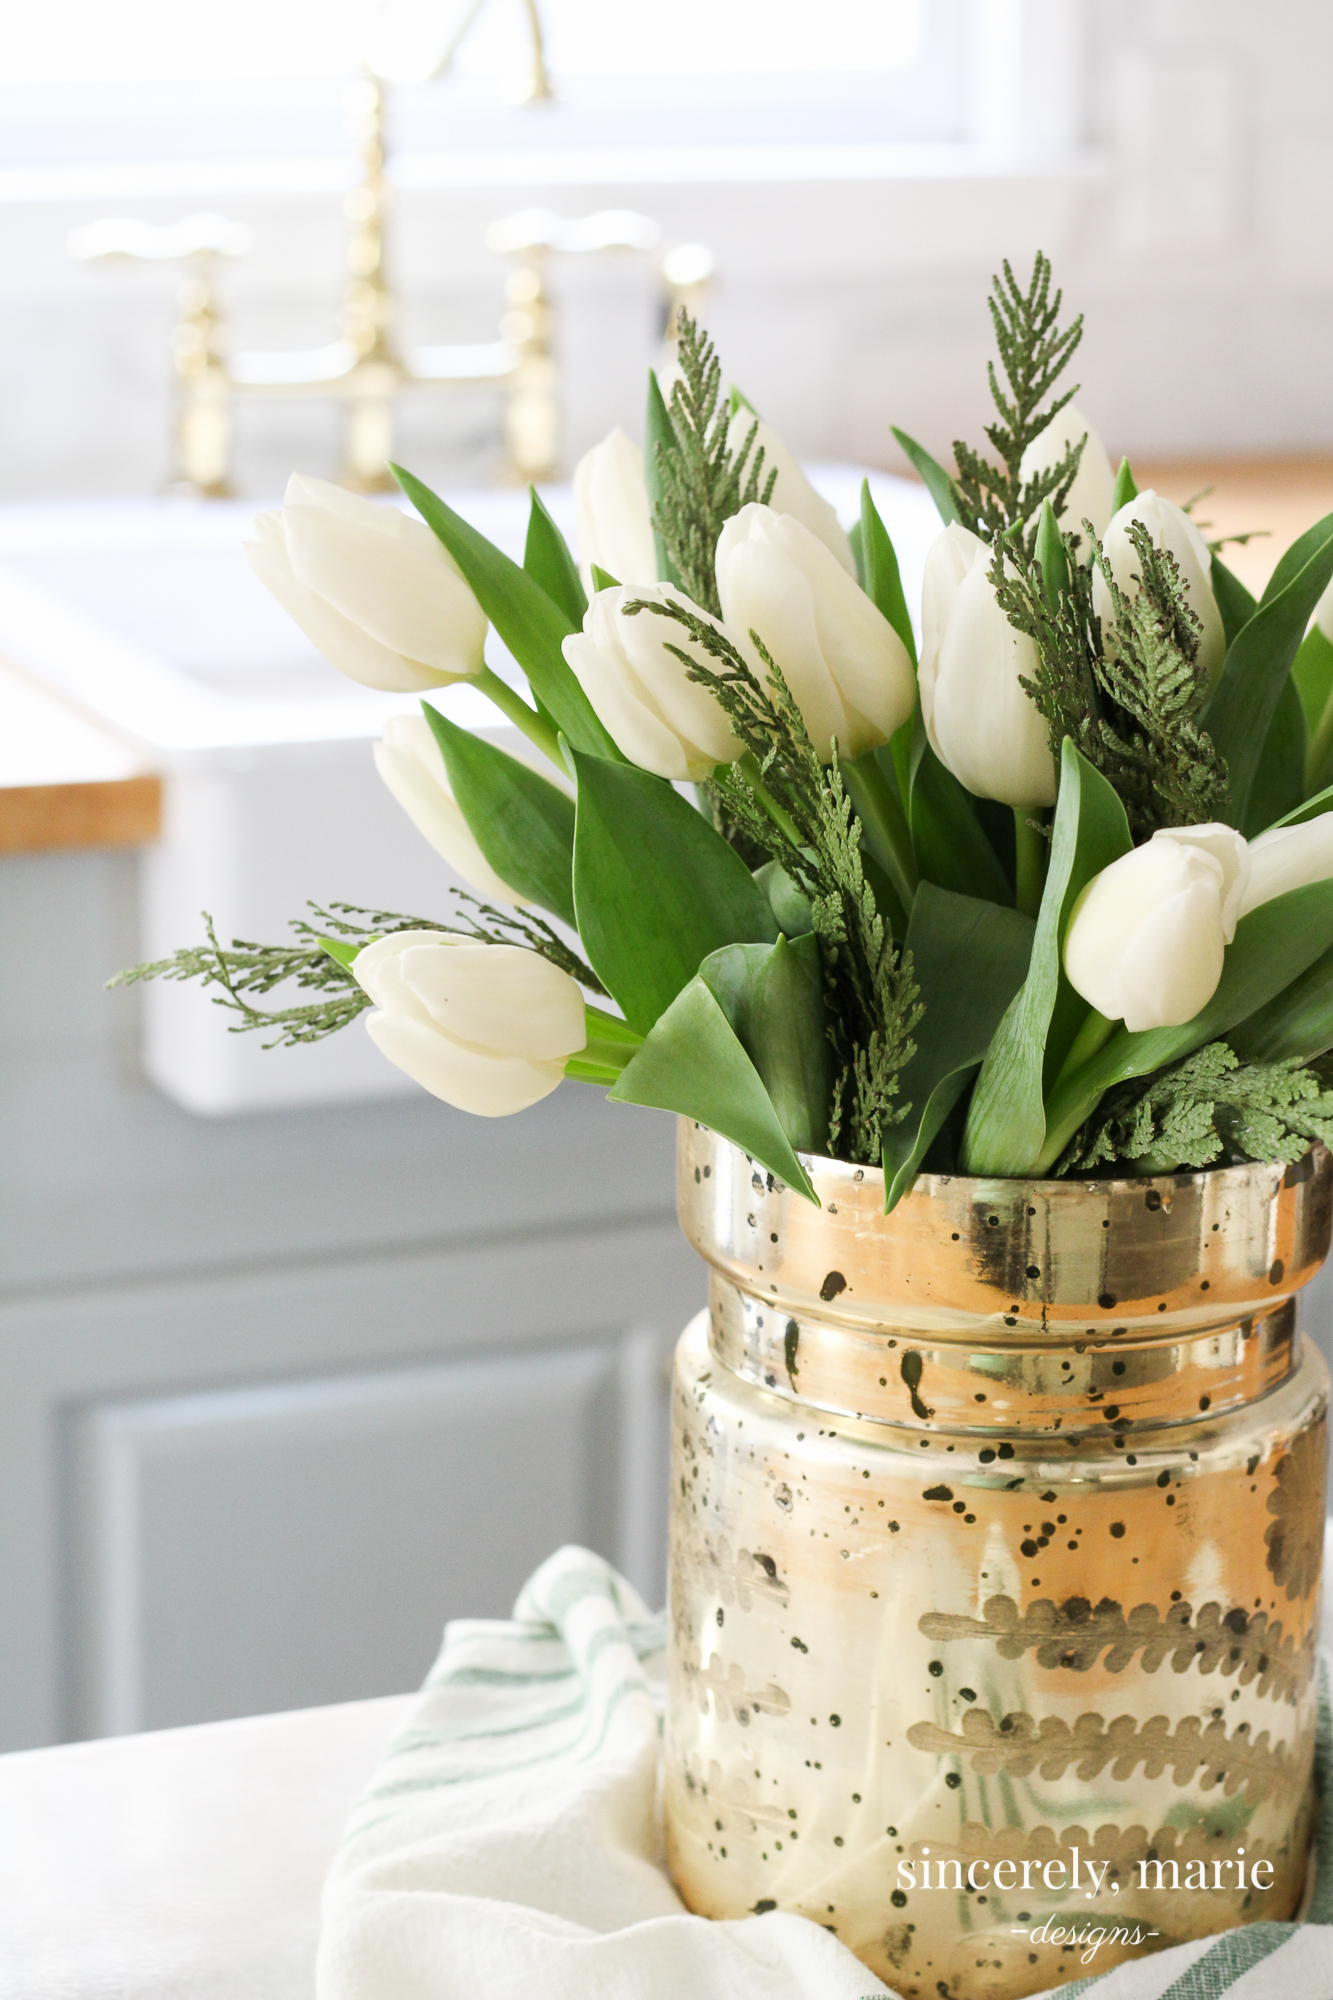 A Simple Winter Floral Arrangement - Sincerely, Marie Designs